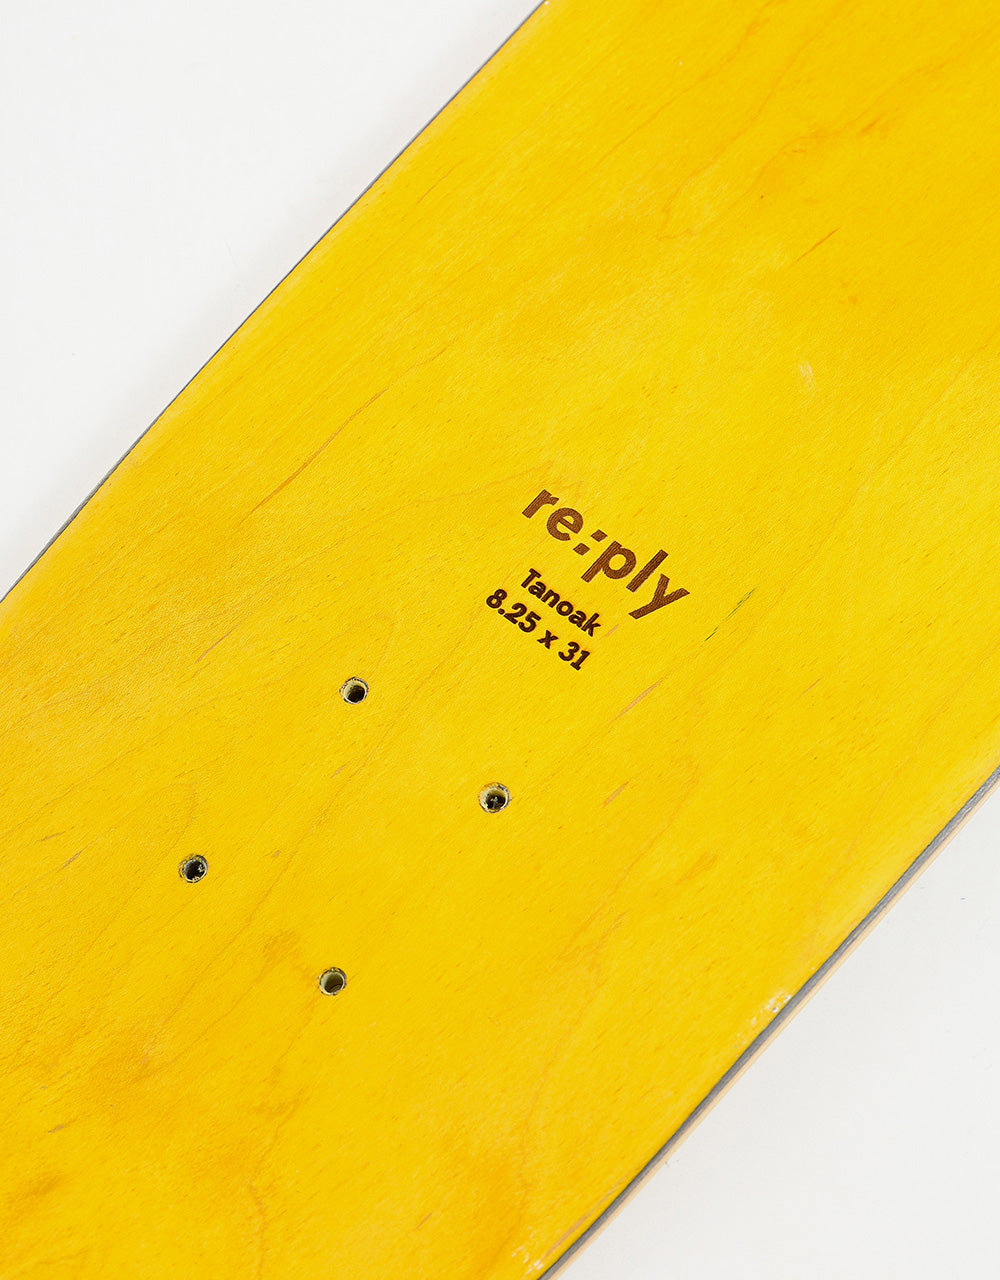 re:ply Time (Tanoak) Skateboard Deck - 8.25" x 31"